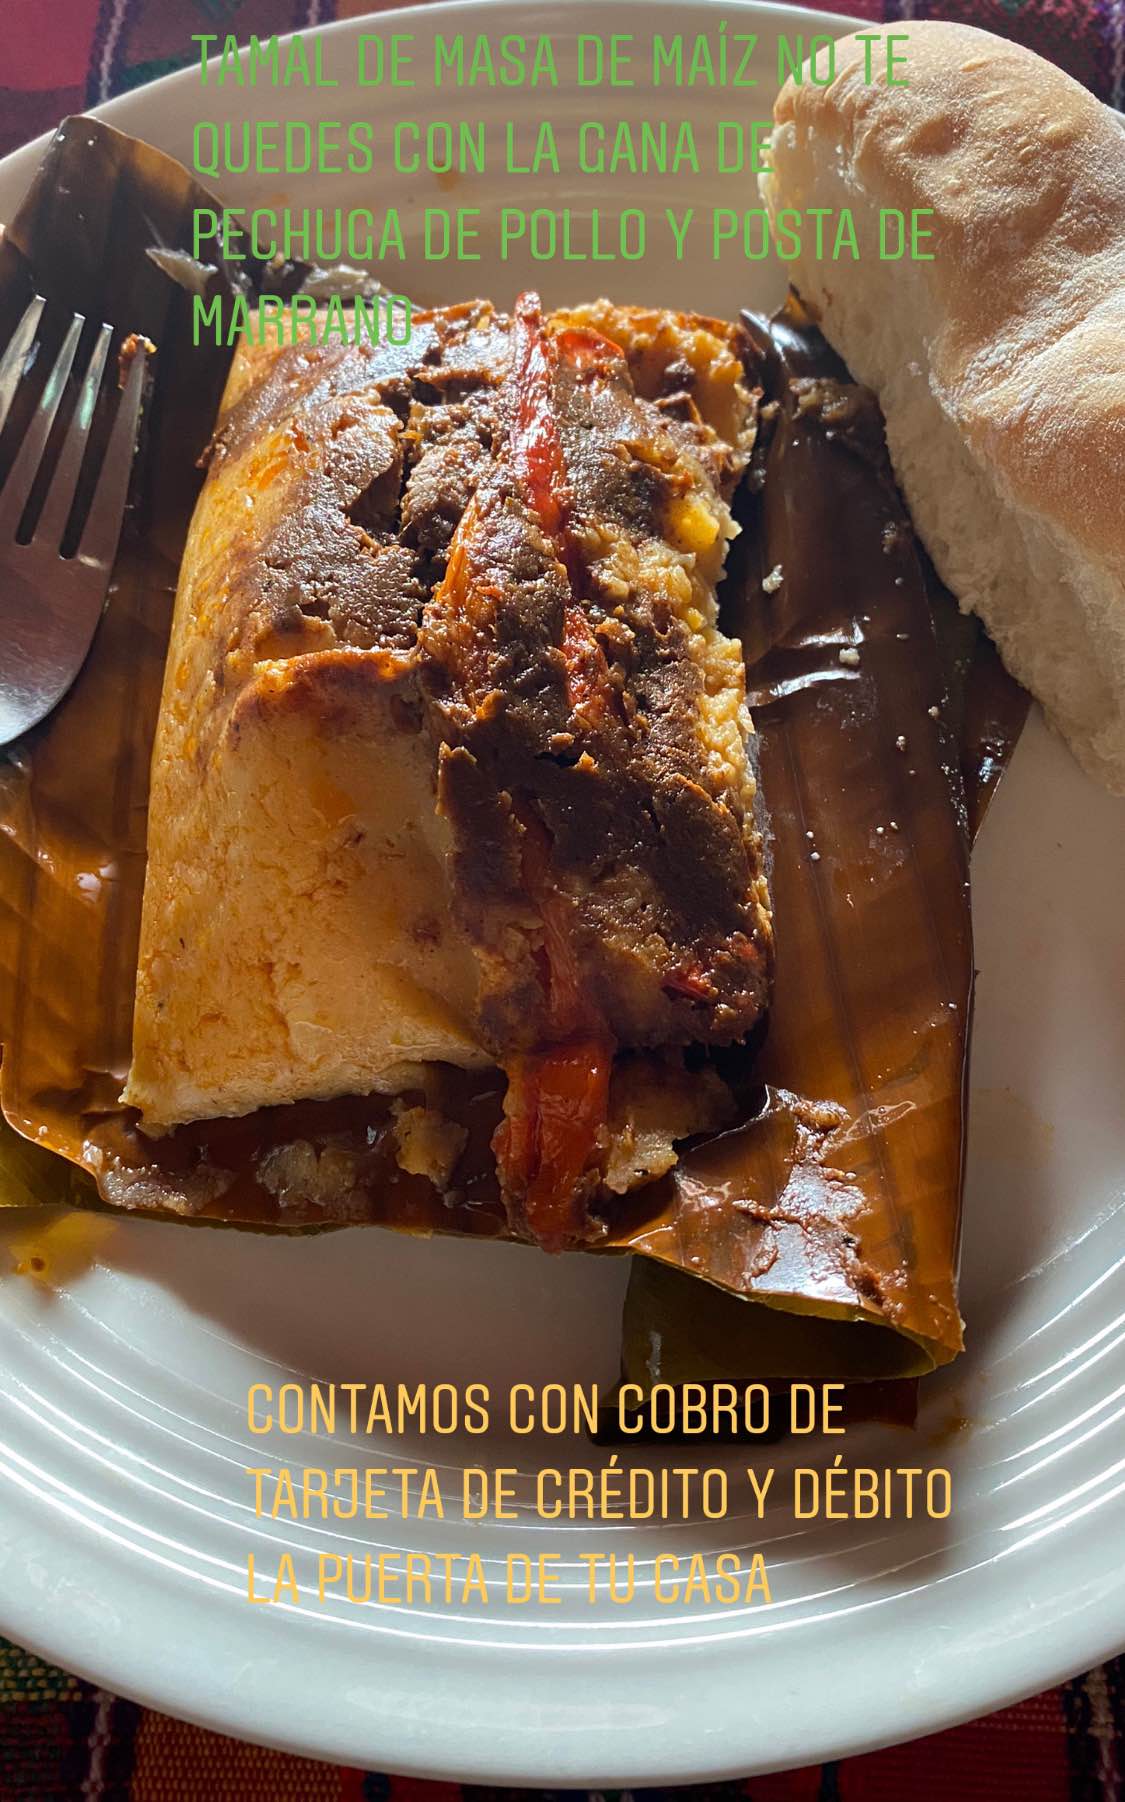 SubMarinos, Dedos de Queso, tamales de masa, Tamalitos de Frijol Nuevo , Paches , Arepas Colombianas